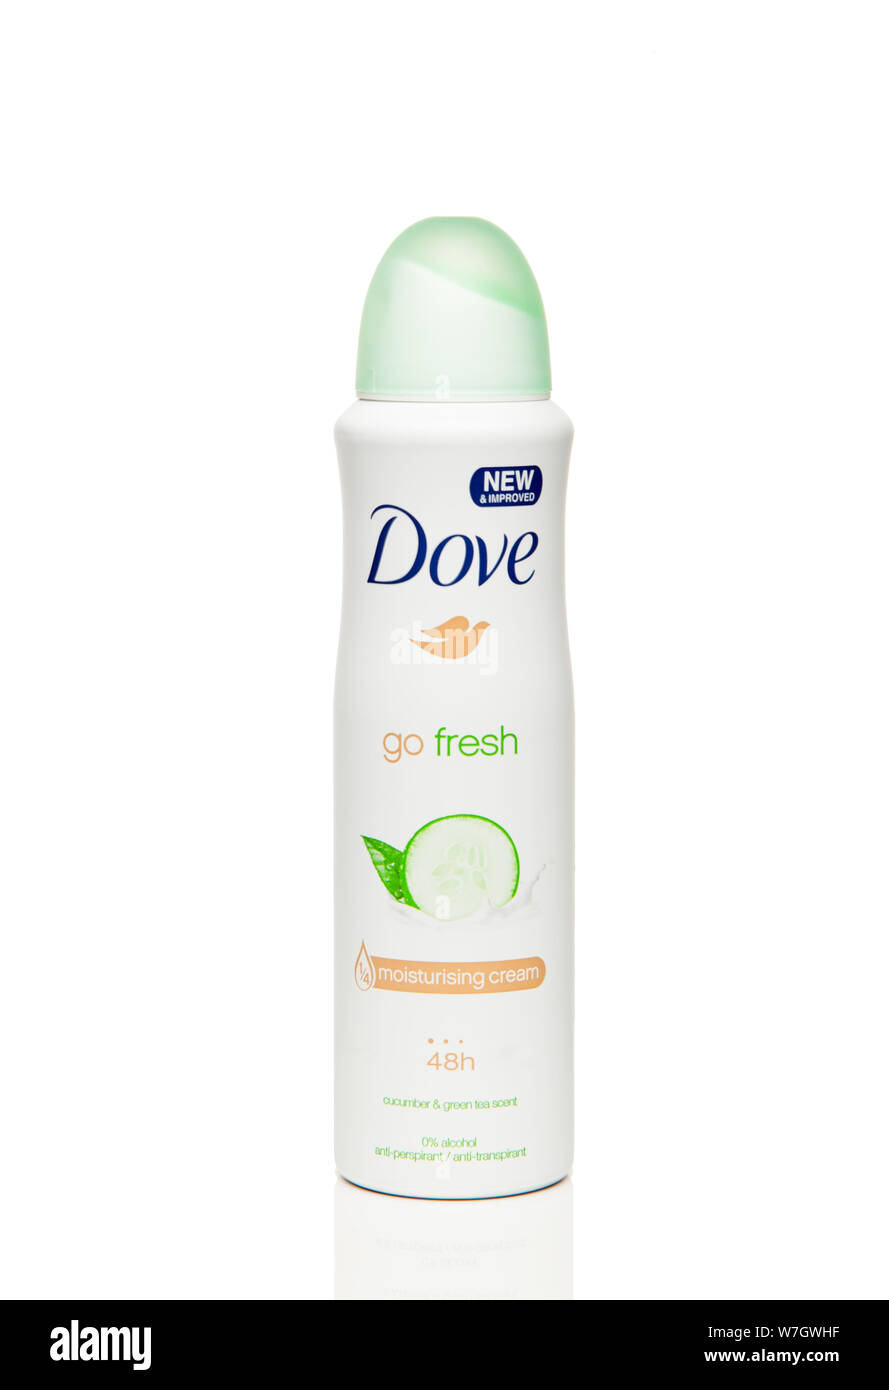 Bouteille anti-sudorifiques Dove Go Fresh - crème hydratante 48h,  nouvelle&améliorée, concombre et thé vert sccent, isolé sur fond blanc  Photo Stock - Alamy